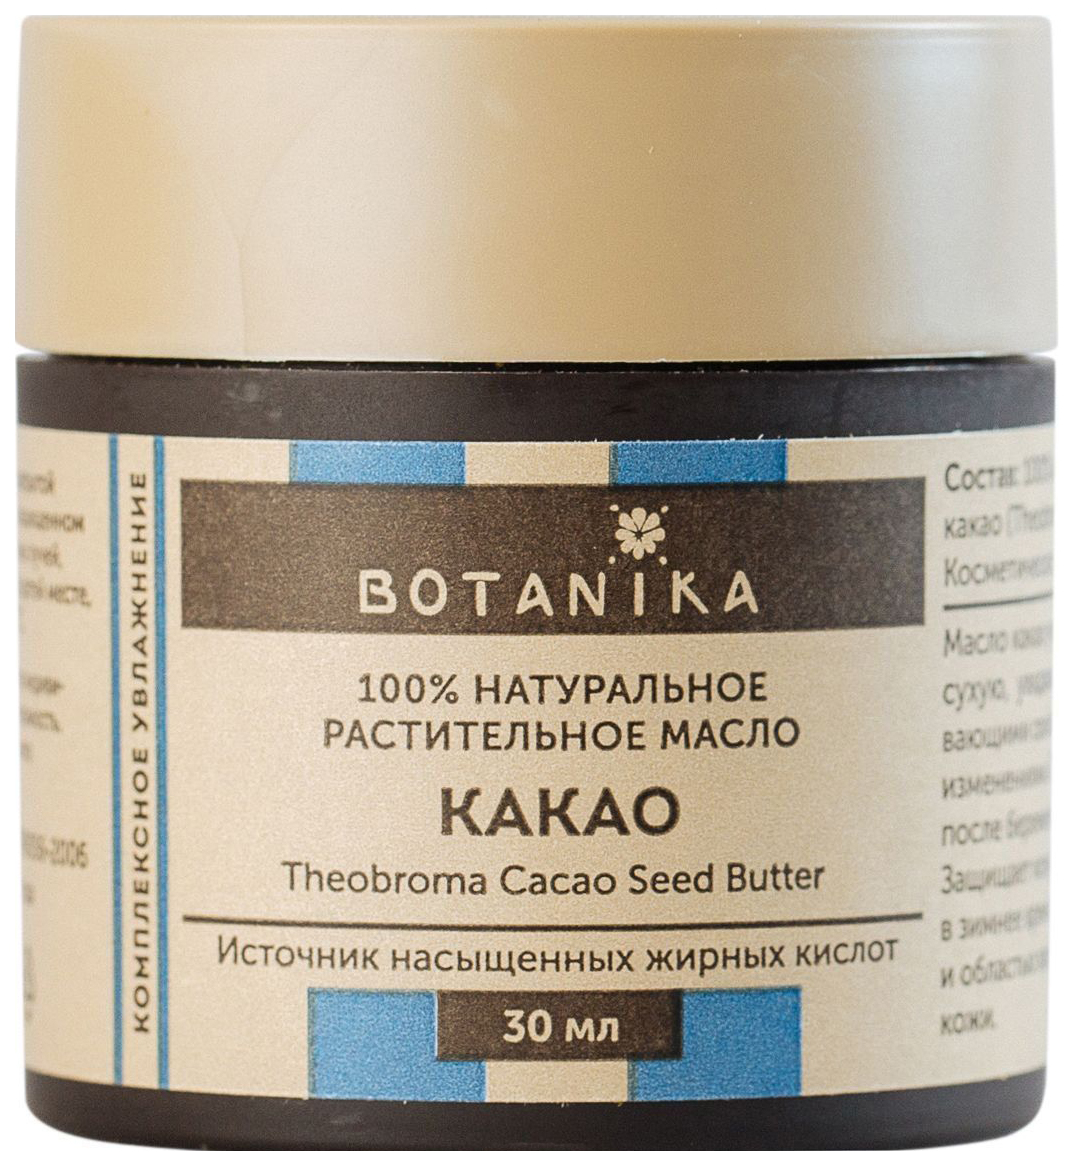 Масло для тела Botanika Жирное масло Какао 30 мл масло botanika 100% натуральное жирное кокоса объем 30 мл